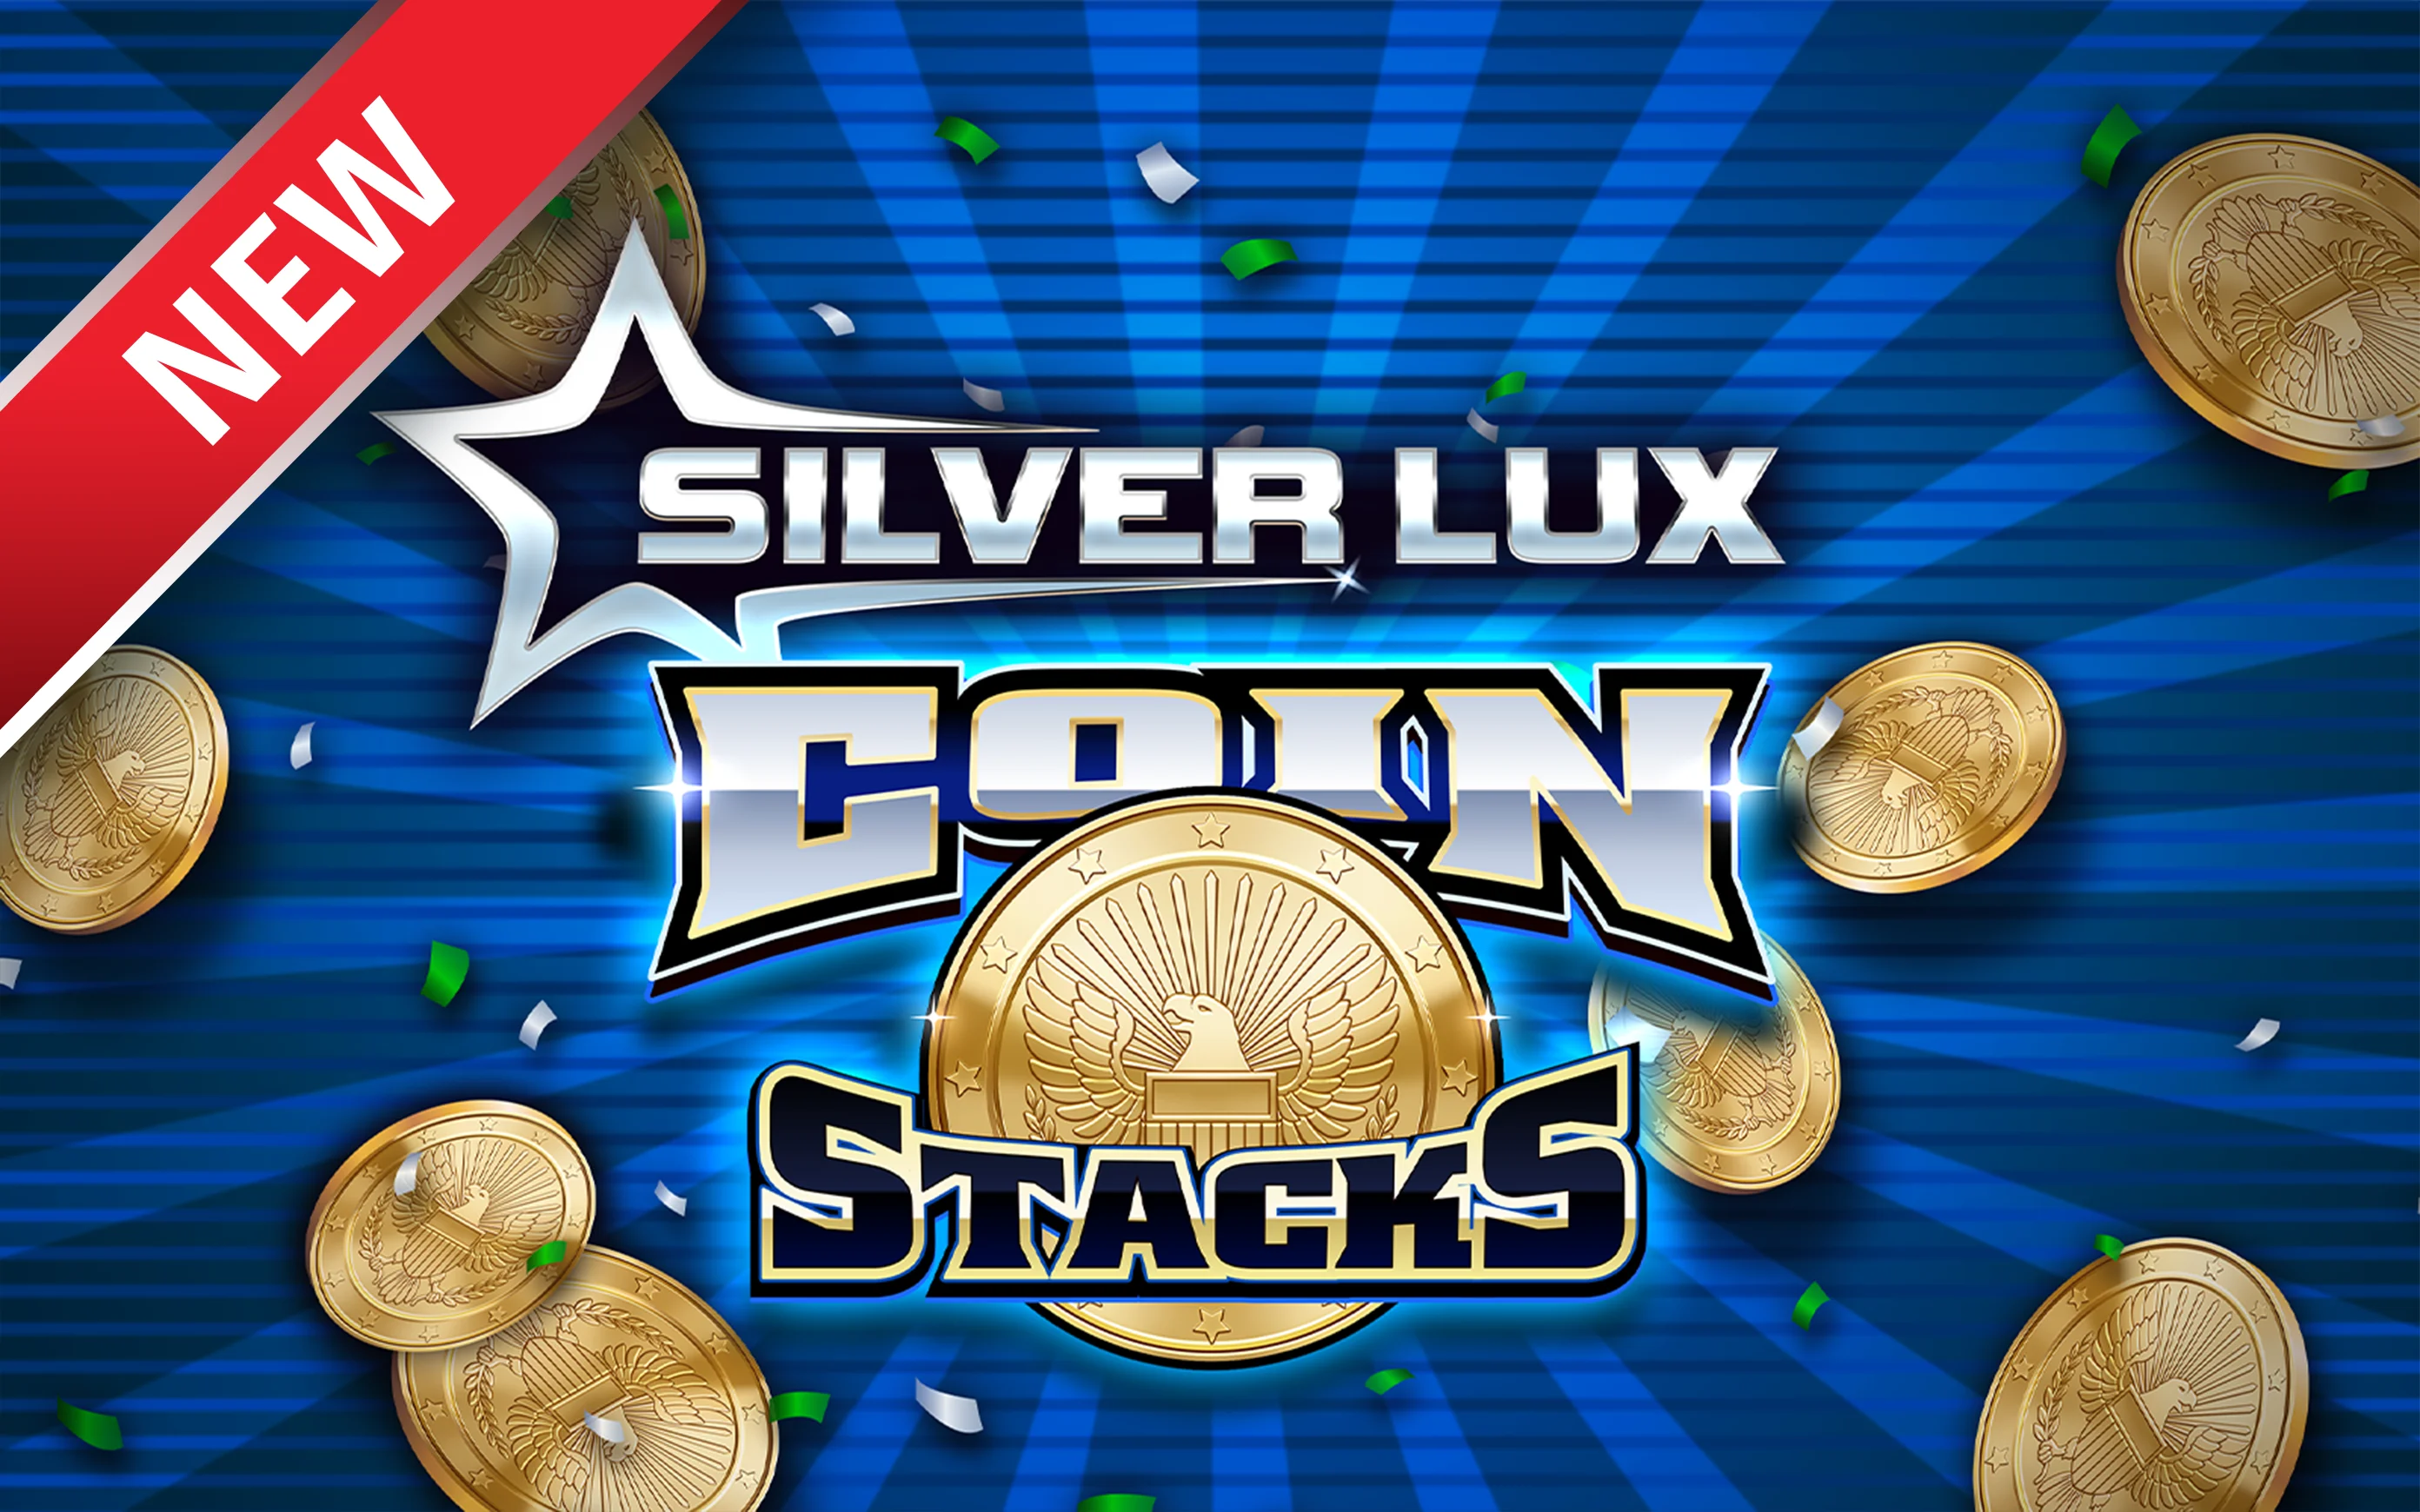 Chơi Silver Lux – Coin Stacks trên sòng bạc trực tuyến Starcasino.be